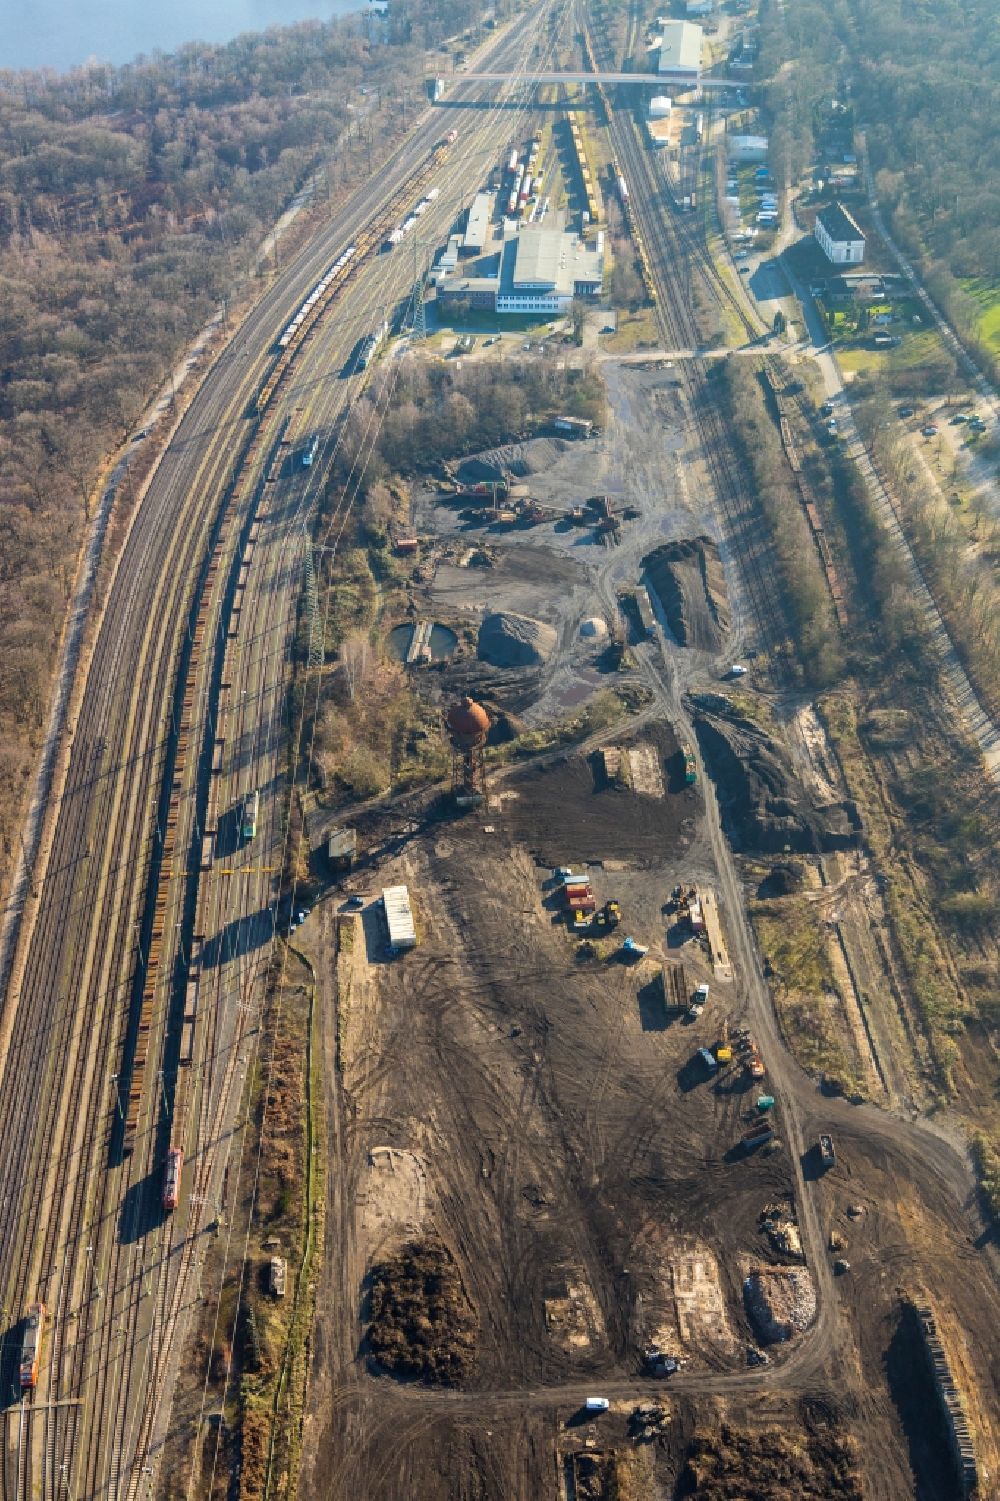 Luftbild Duisburg - Ehemaligen Rangierbahnhof und Güterbahnhofsgelände in Duisburg im Bundesland Nordrhein-Westfalen, Deutschland